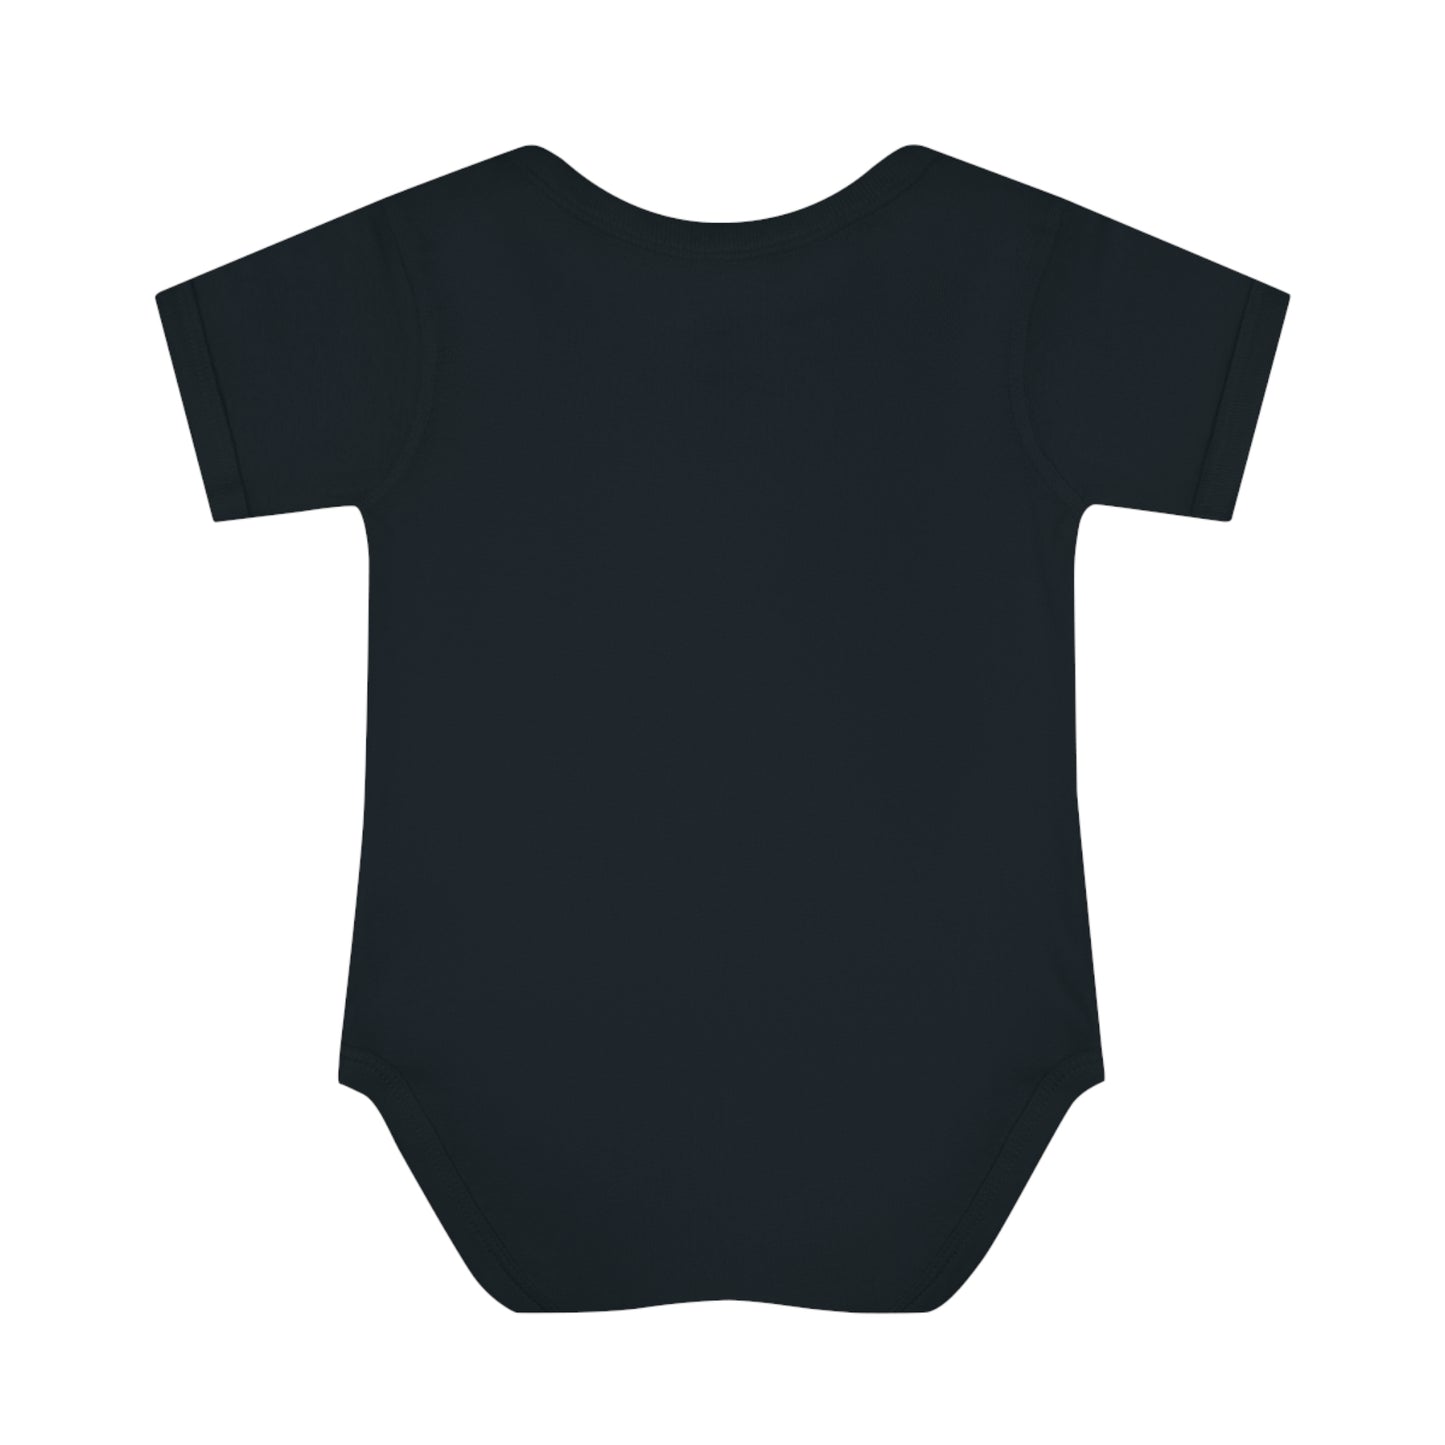 OFHC Retro Original Logo Blk only Infant Baby Rib Bodysuit